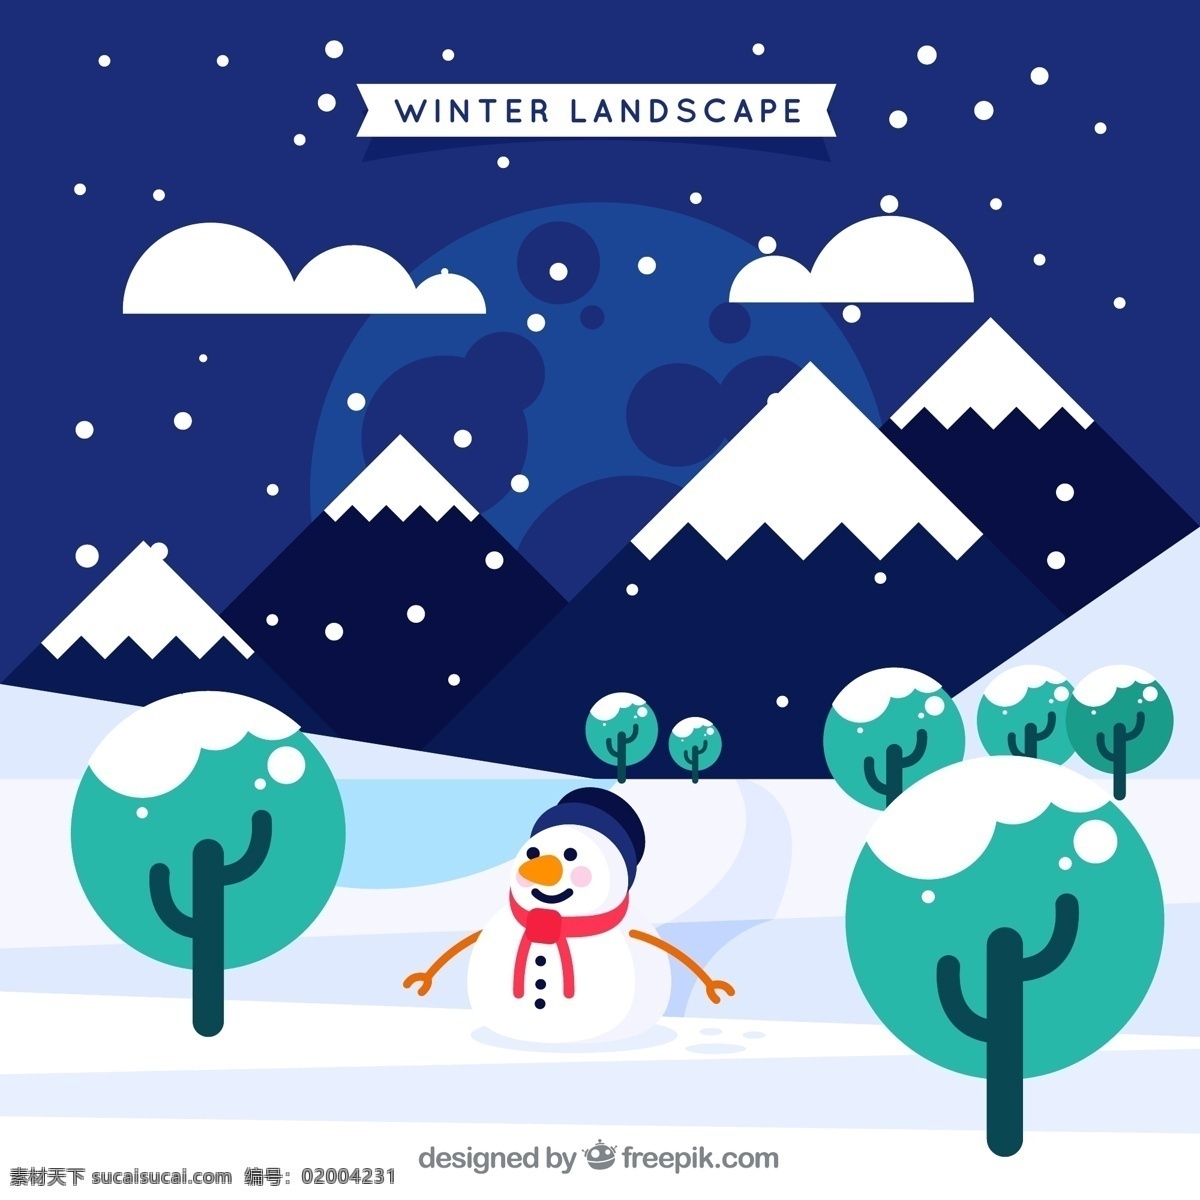 创意 冬季 雪地 风景 矢量 矢量素材 雪人圣诞节 平安夜 夜晚 下雪 自然景观 自然风光